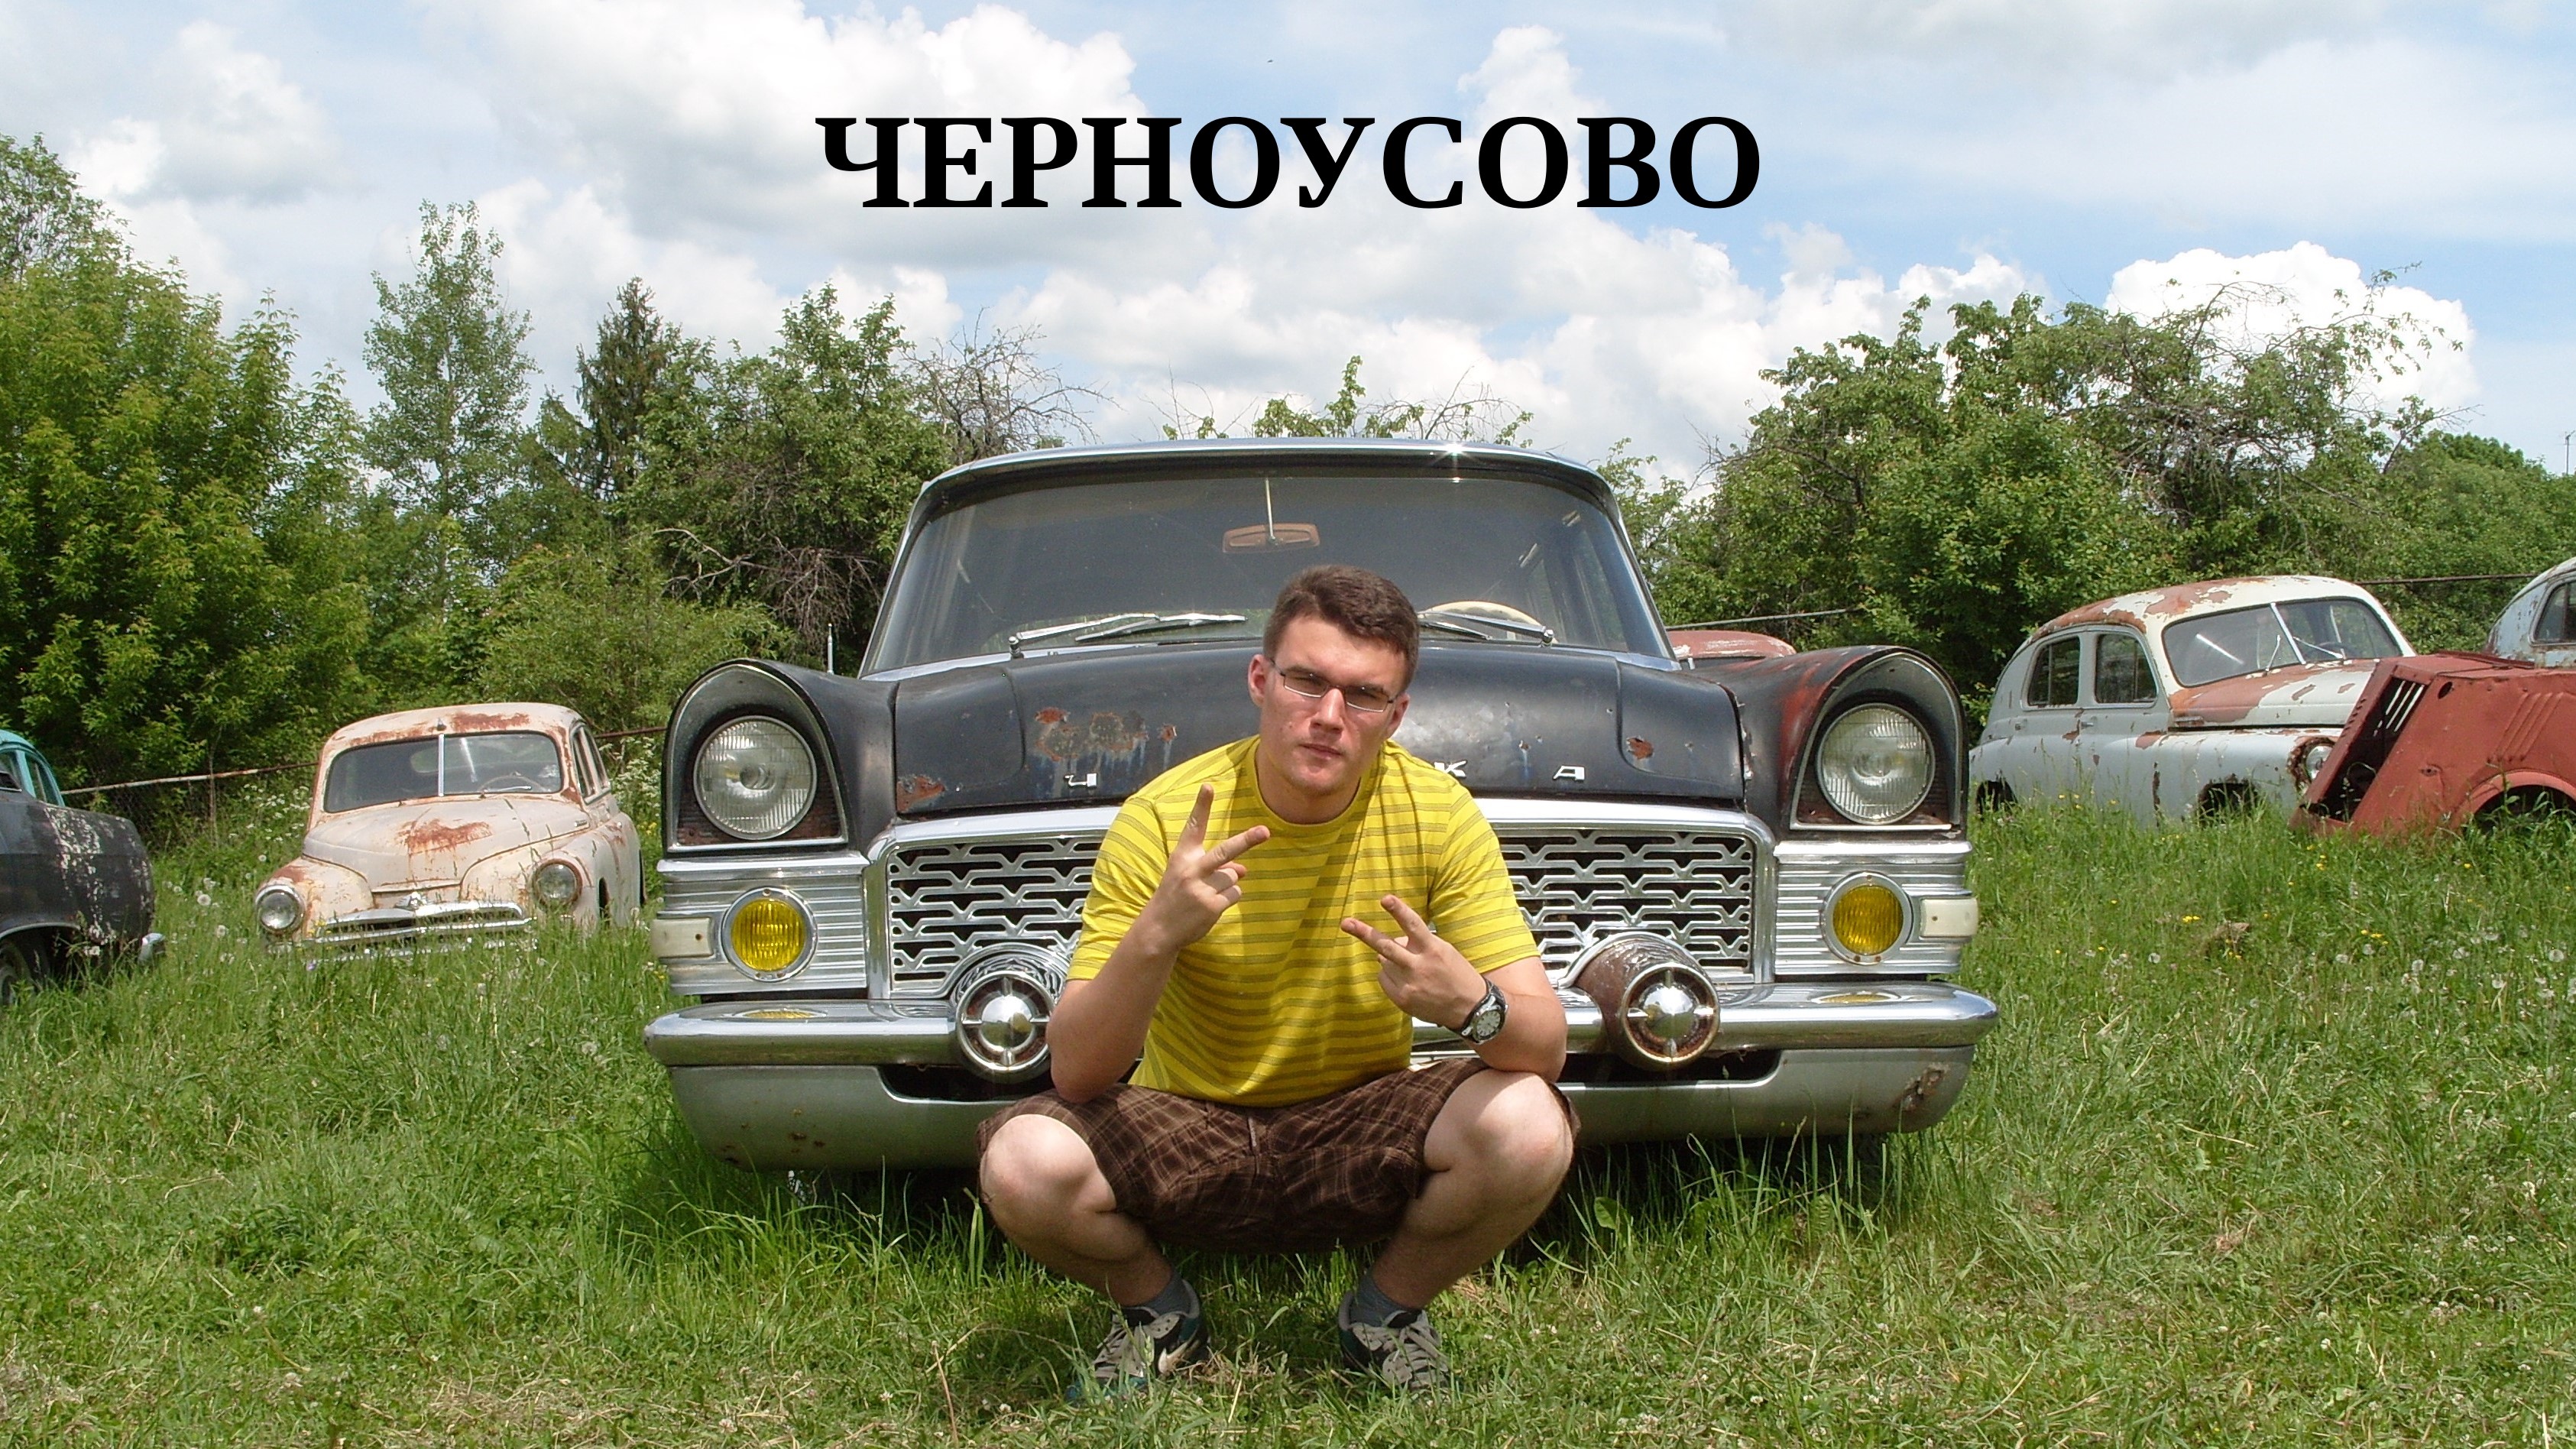 Авто-Музей в Черноусово, 31.05.2013г.